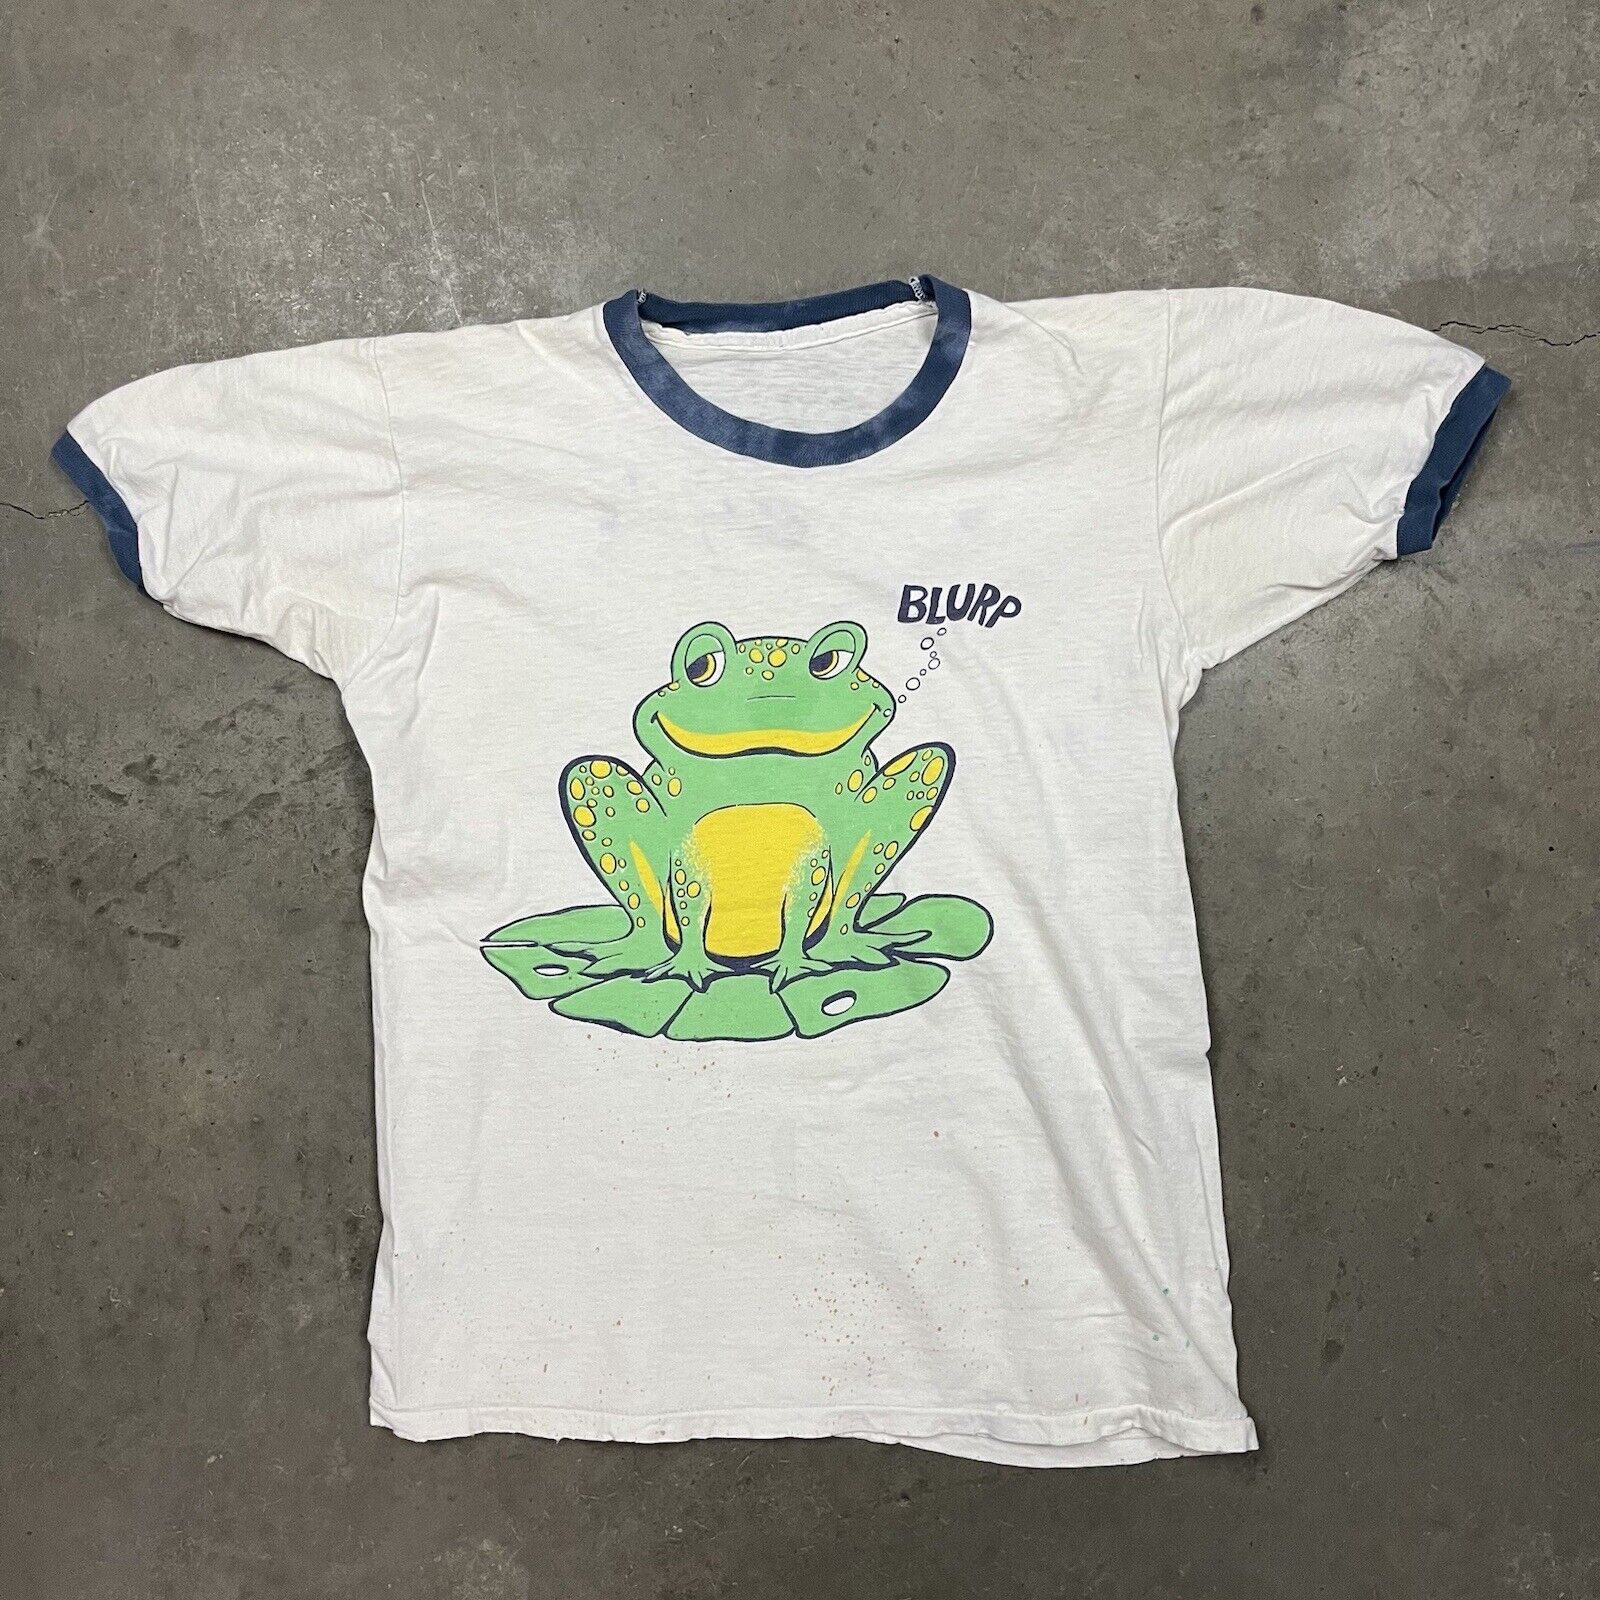 Vintage 60s Frog Blurp Graphic Art Ringer T Shirt White S